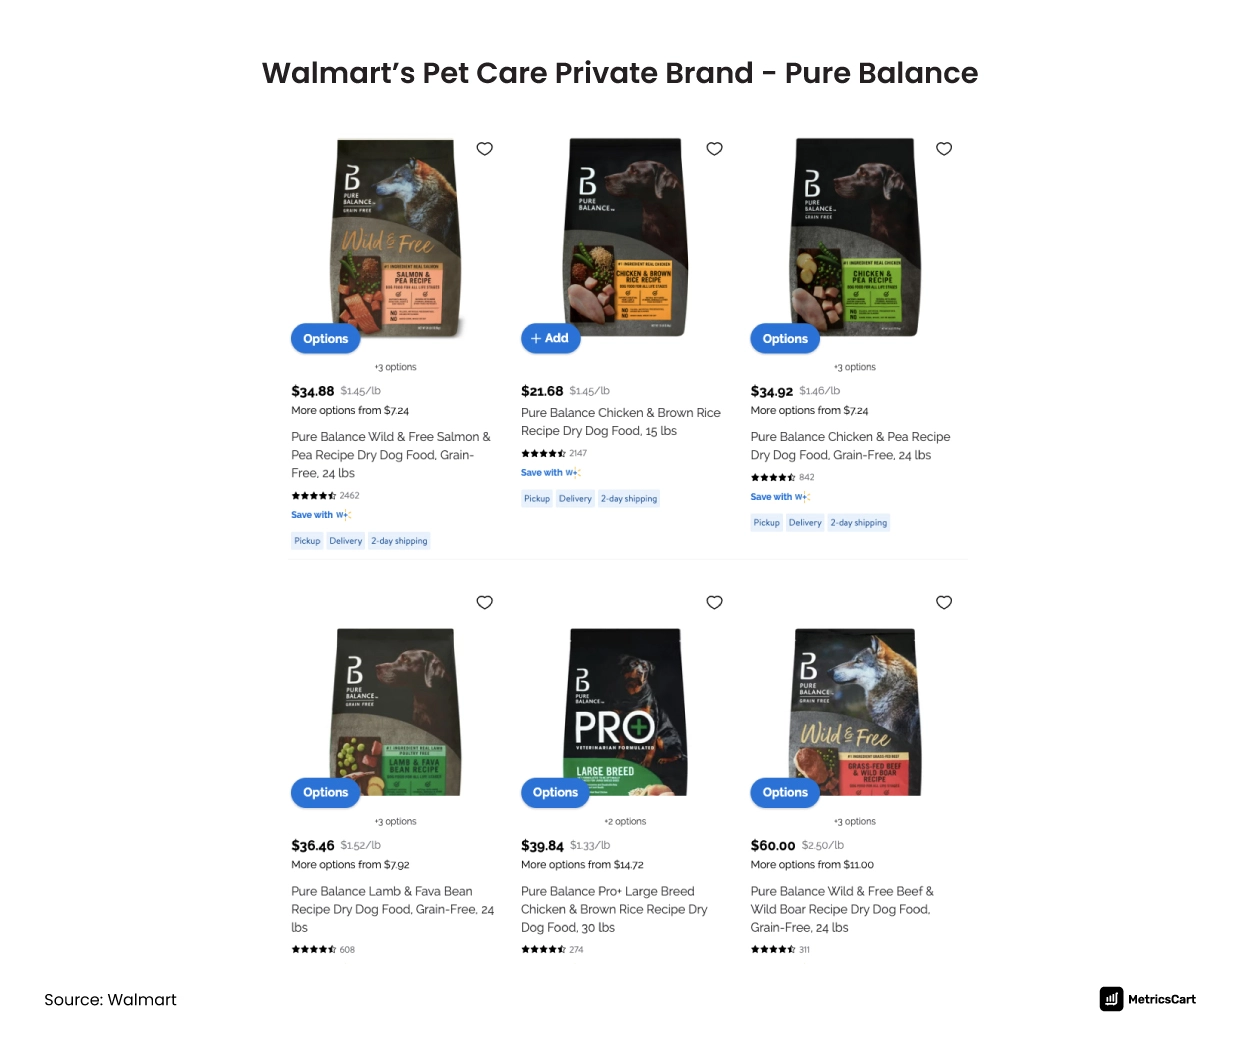 Walmart Private Label Brand in Pet Care- Pure Balance